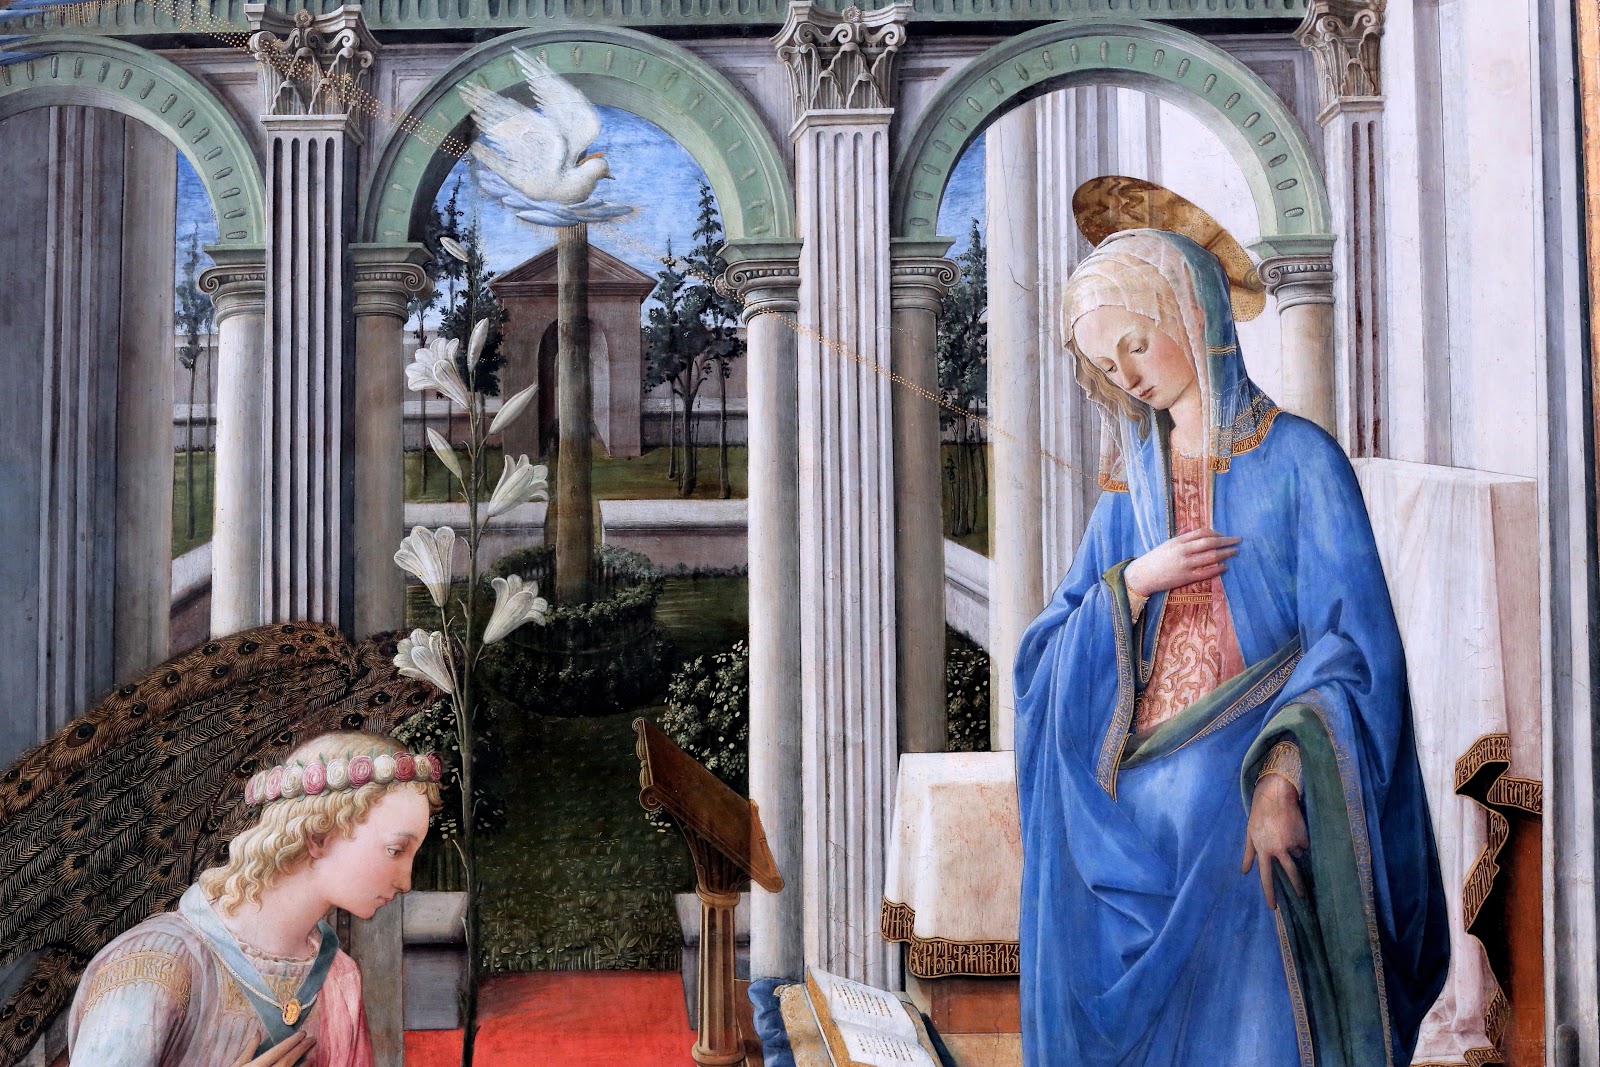 Filippino+Lippi-1457-1504 (150).jpg